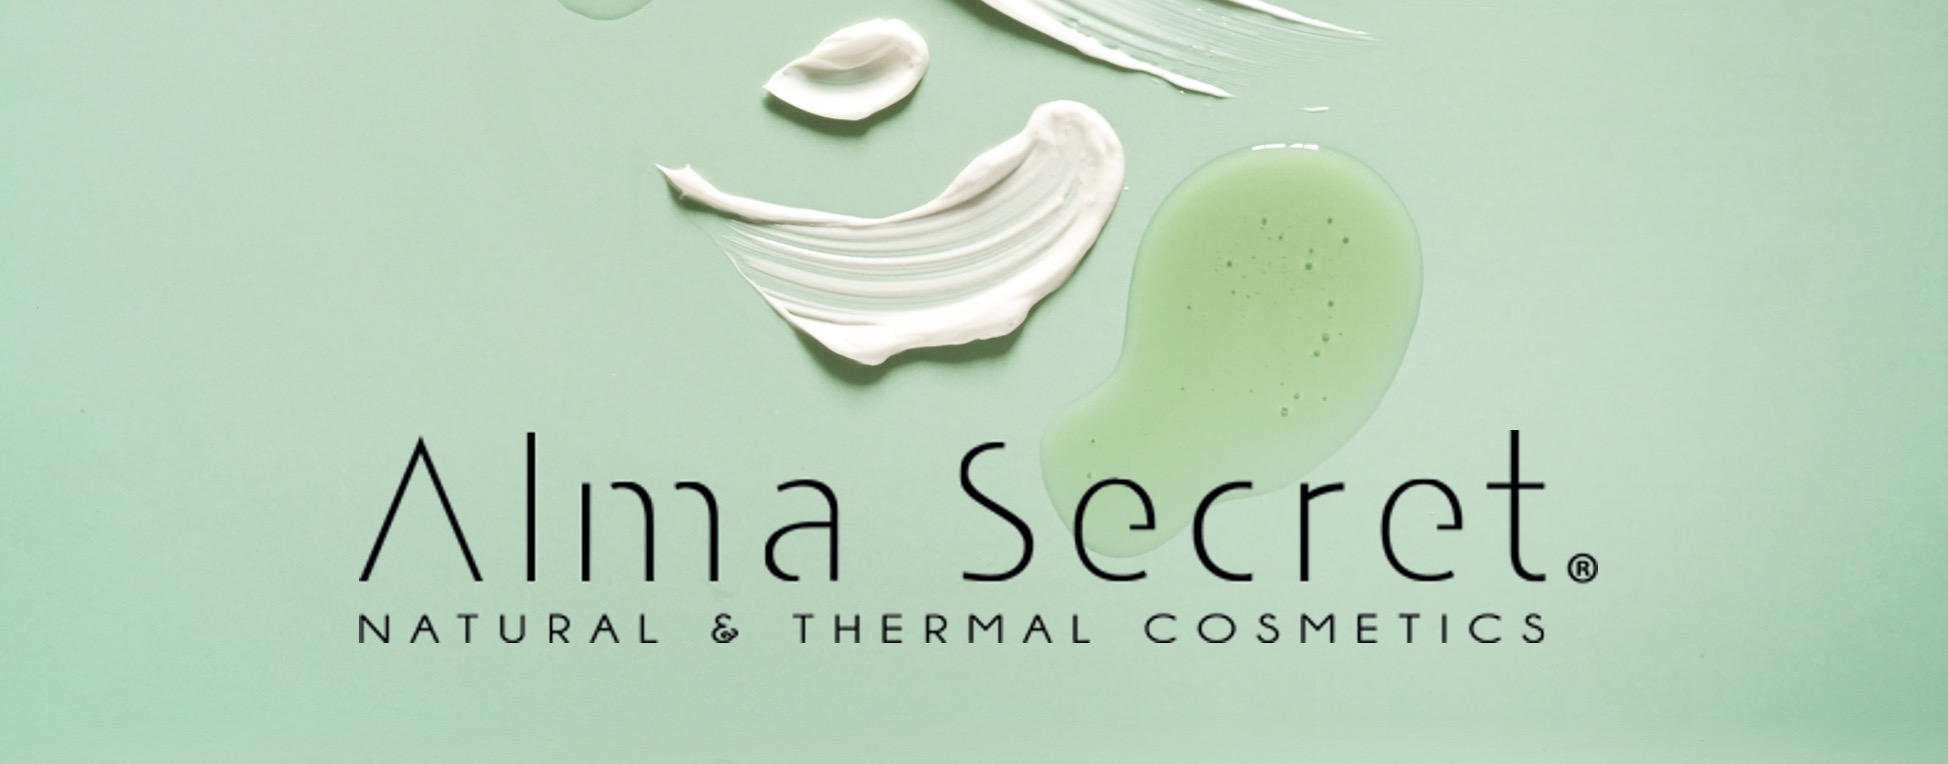 Alma Secret wholesale products